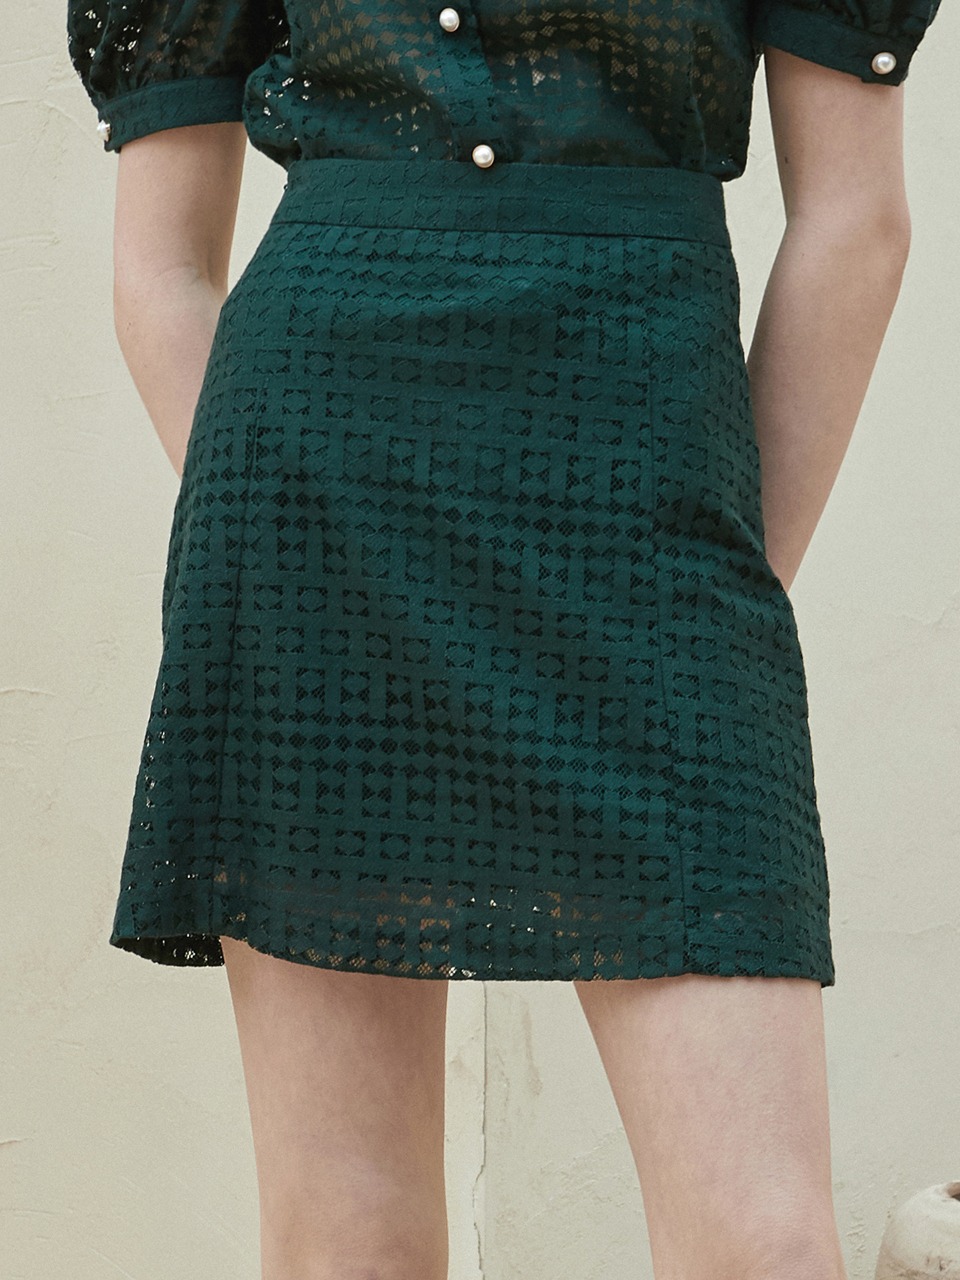 j786 dia mini skirt (green)